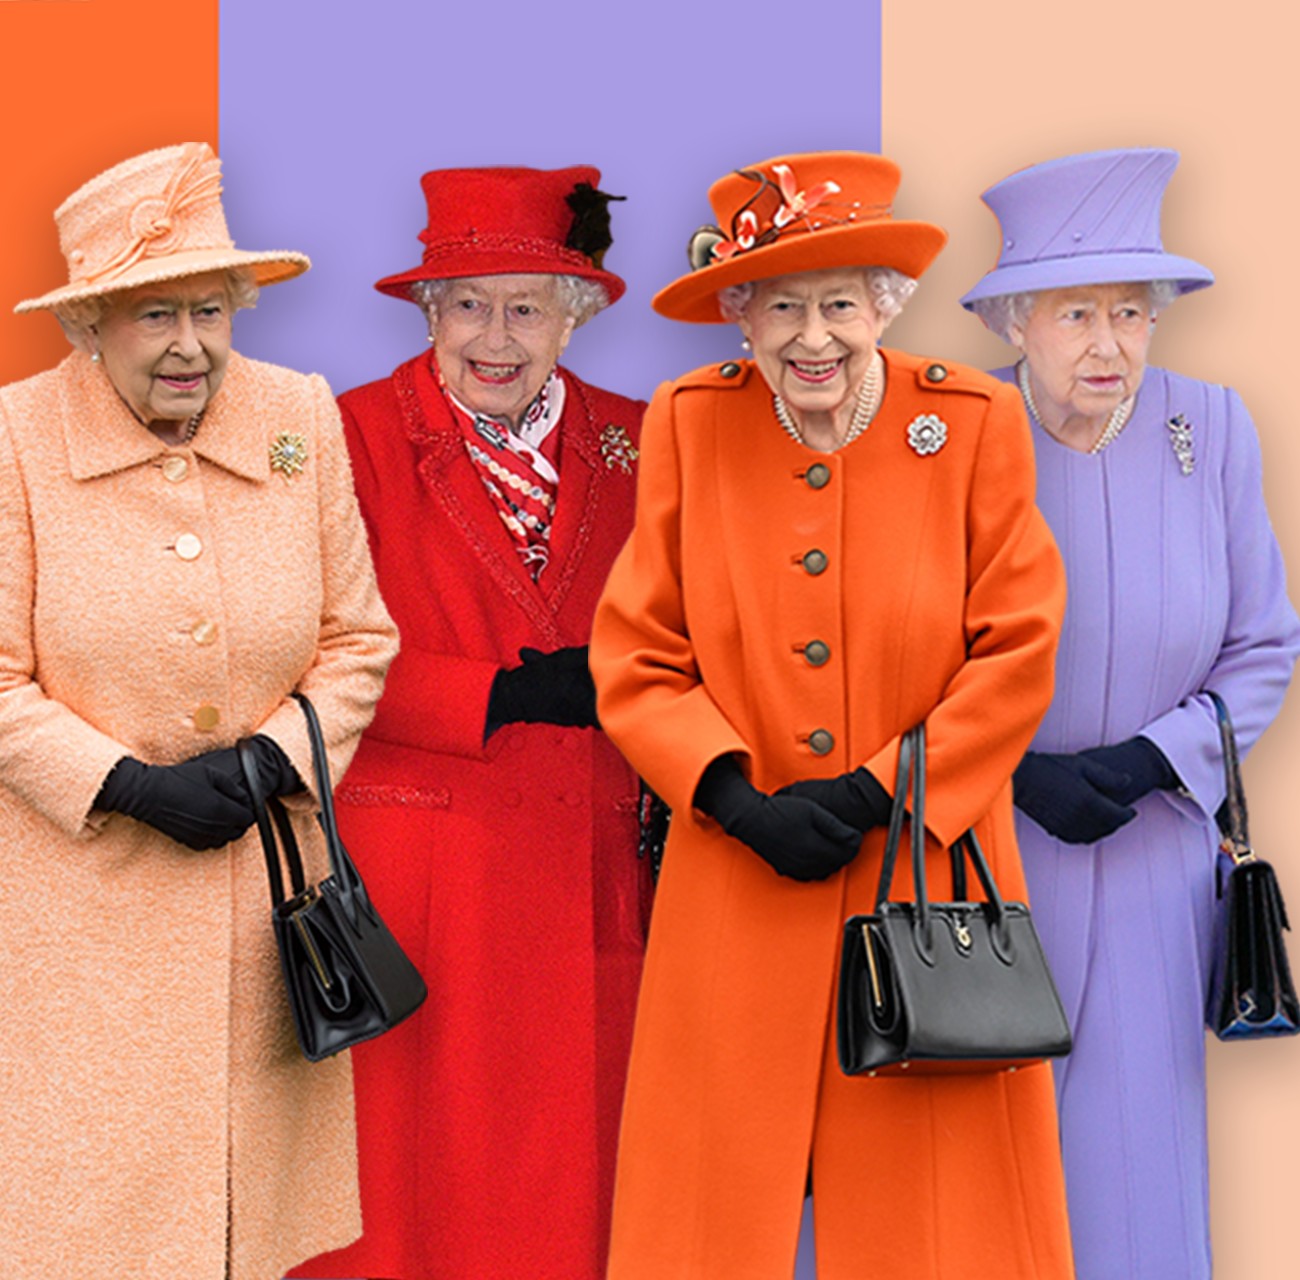 Rainha Elizabeth 2ª com casacos e chapéus da mesma cor (Foto: BBC News)